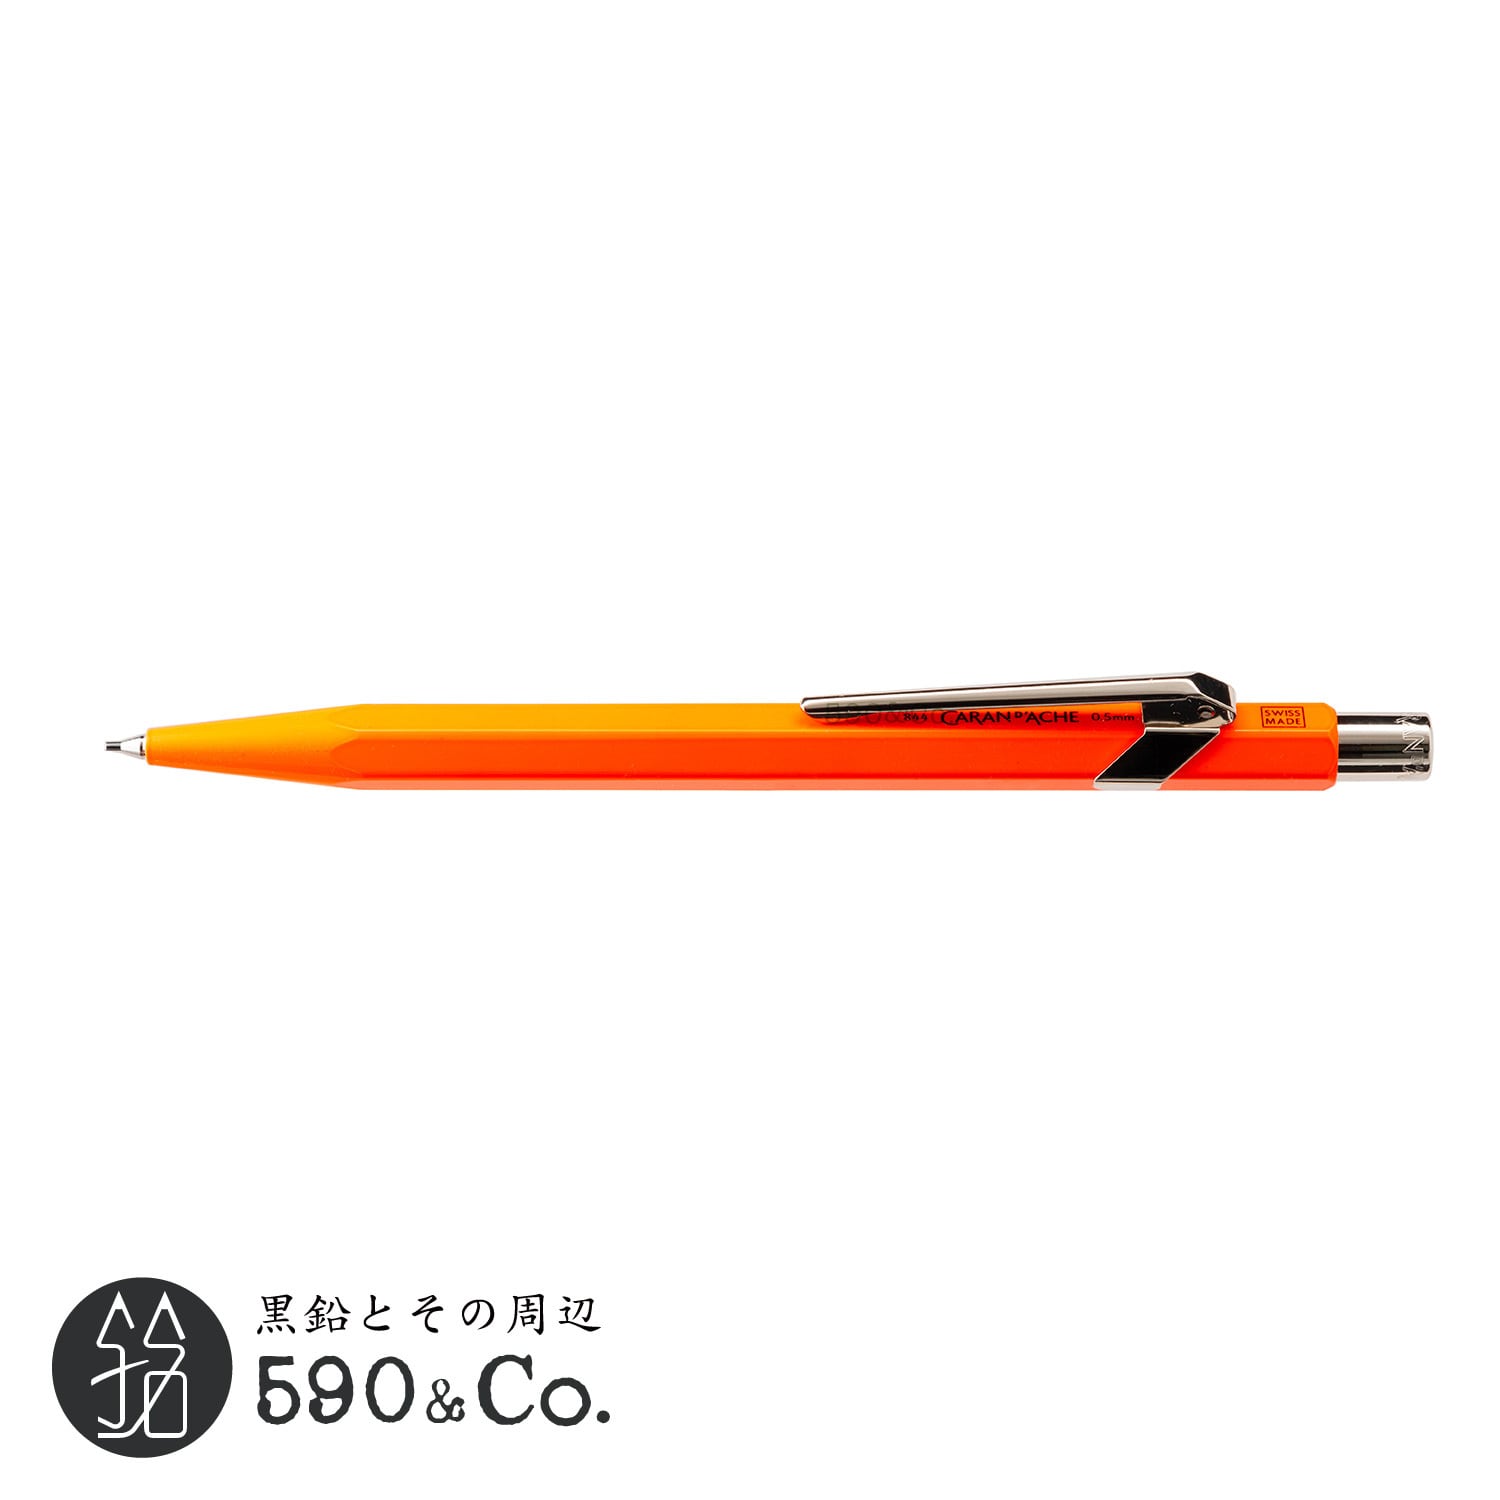 【CARAN D'ACHE/カランダッシュ】849メカニカルペンシル 0.5mm (蛍光オレンジ) 590Co.